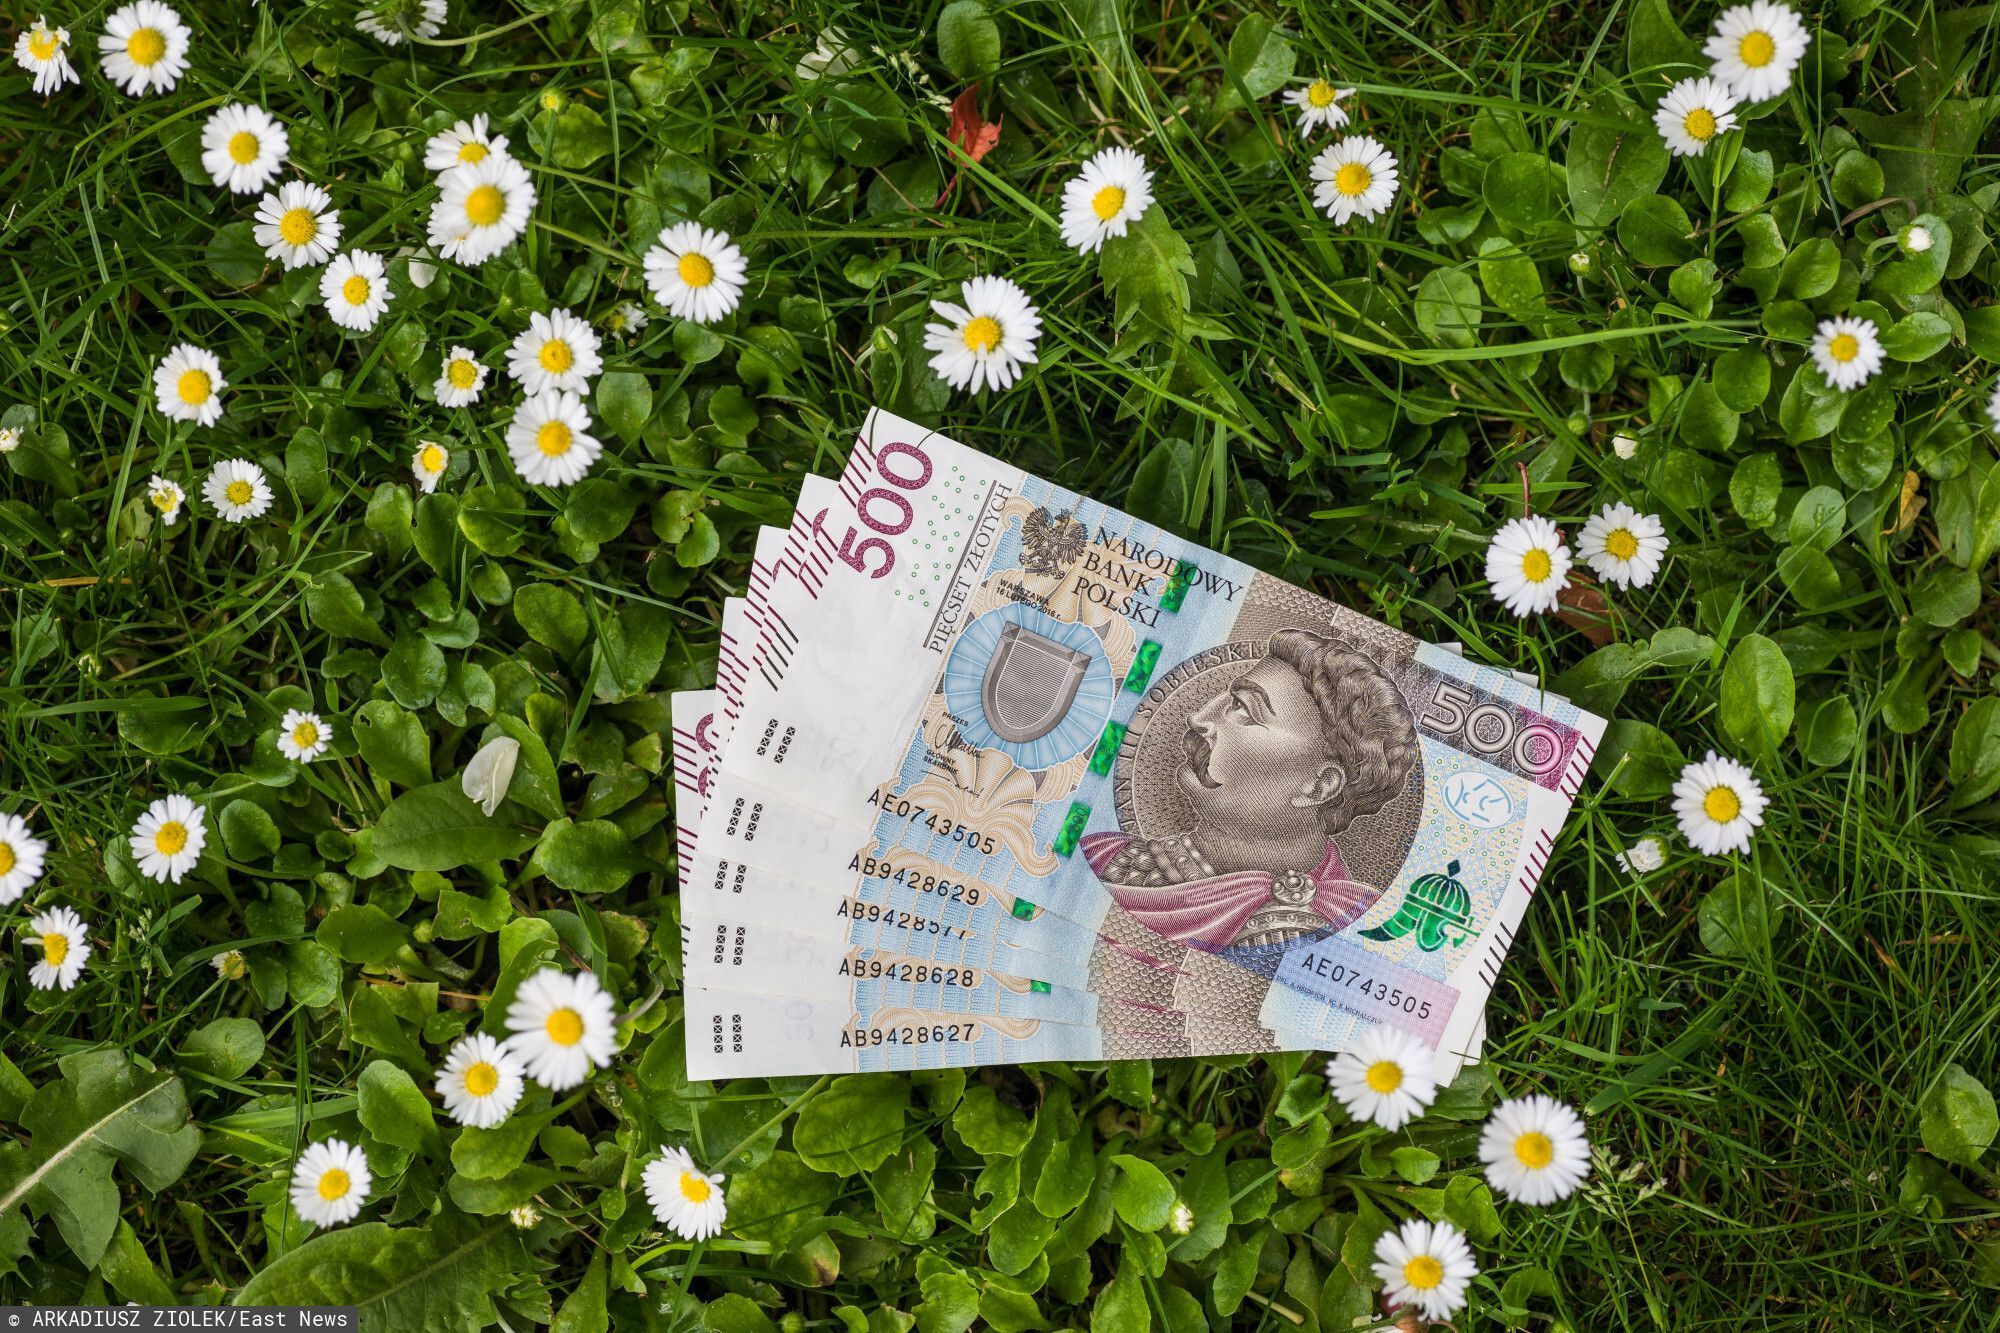 fot: Arkadiusz Ziolek/ East News. 04.05.2020. n/z Polskie banknoty w trawie.